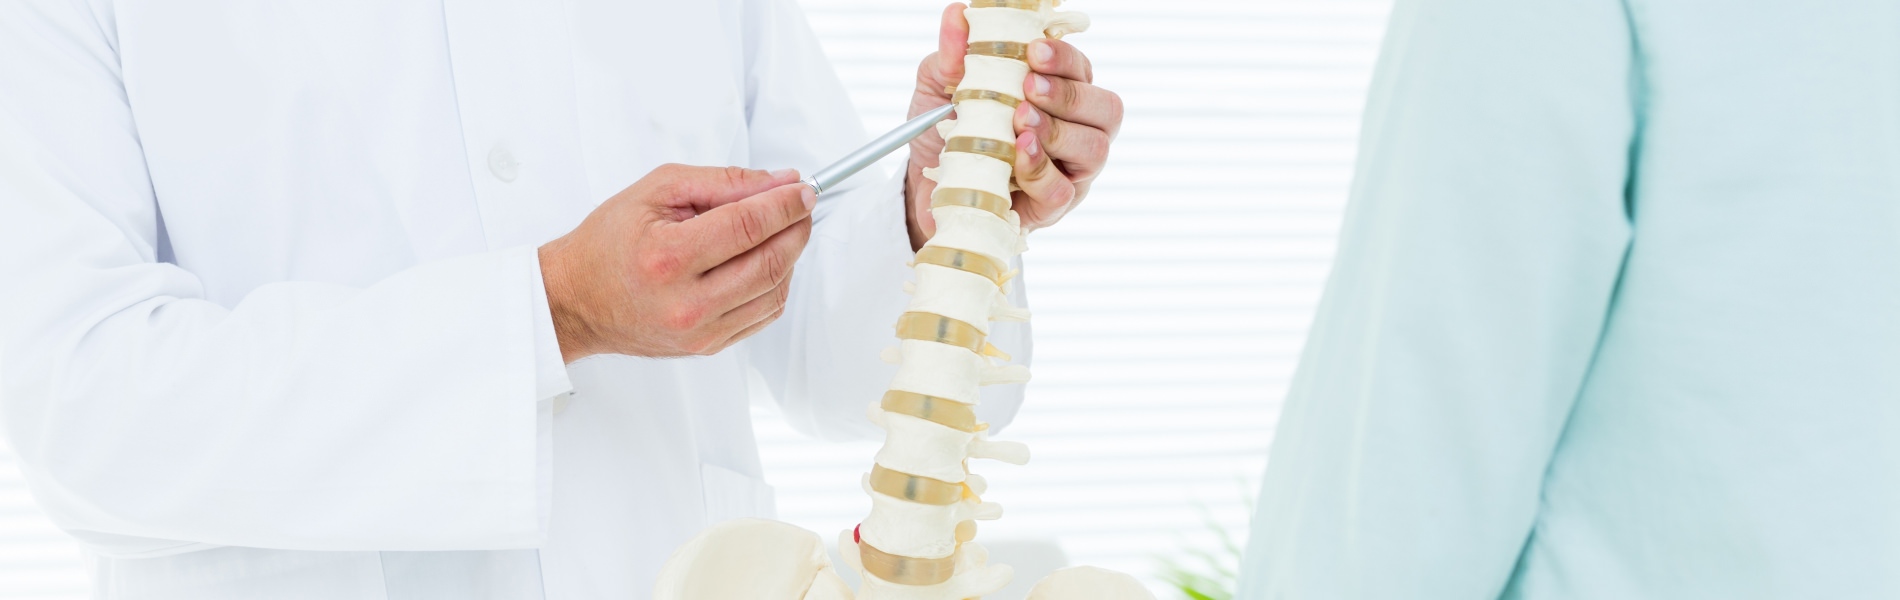 Osteomedic: Praxis für Osteopathie, Physiotherapie und Manuelle Medizin. Heilpraktiker, Akupunktur und Faszientherapie. Sie finden uns in Bensheim-Auerbach.